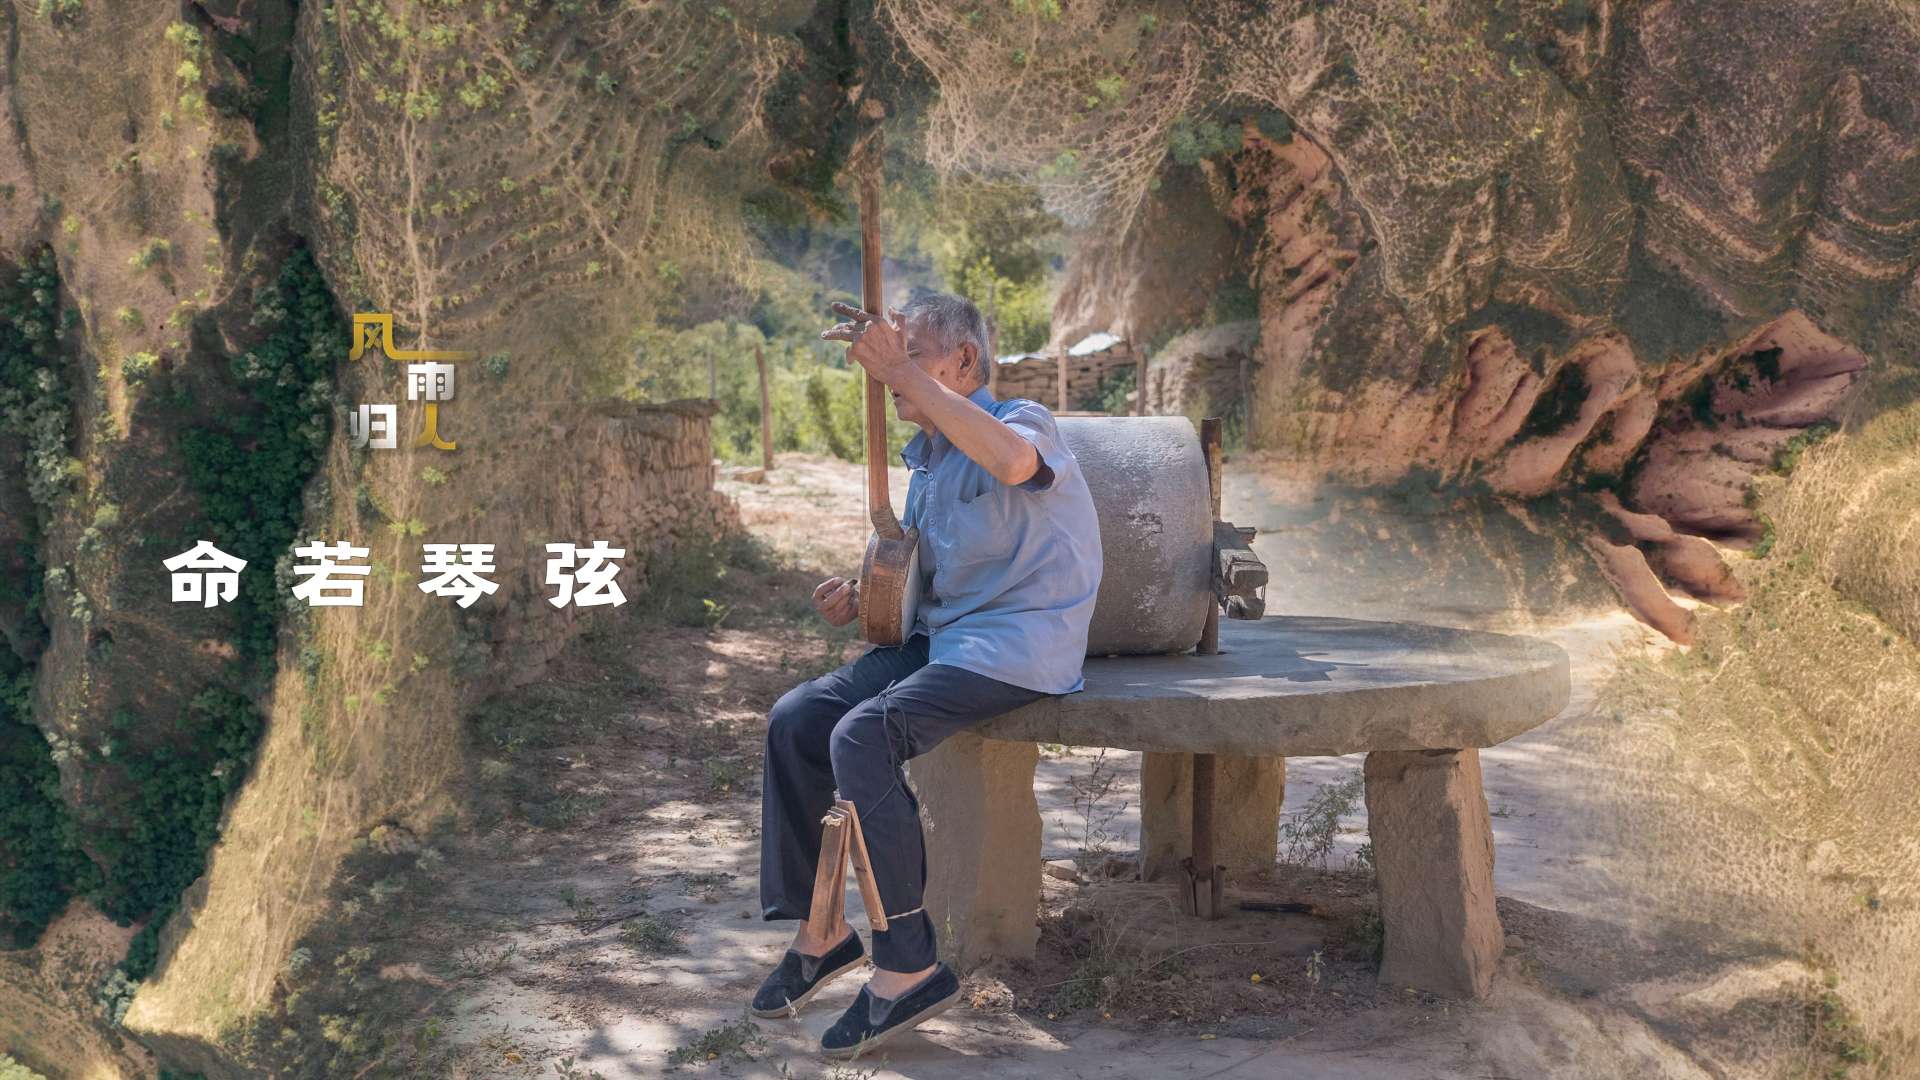 黄土高原上的故事歌手——盲艺人 | 陕西黄土高原风景人文记录